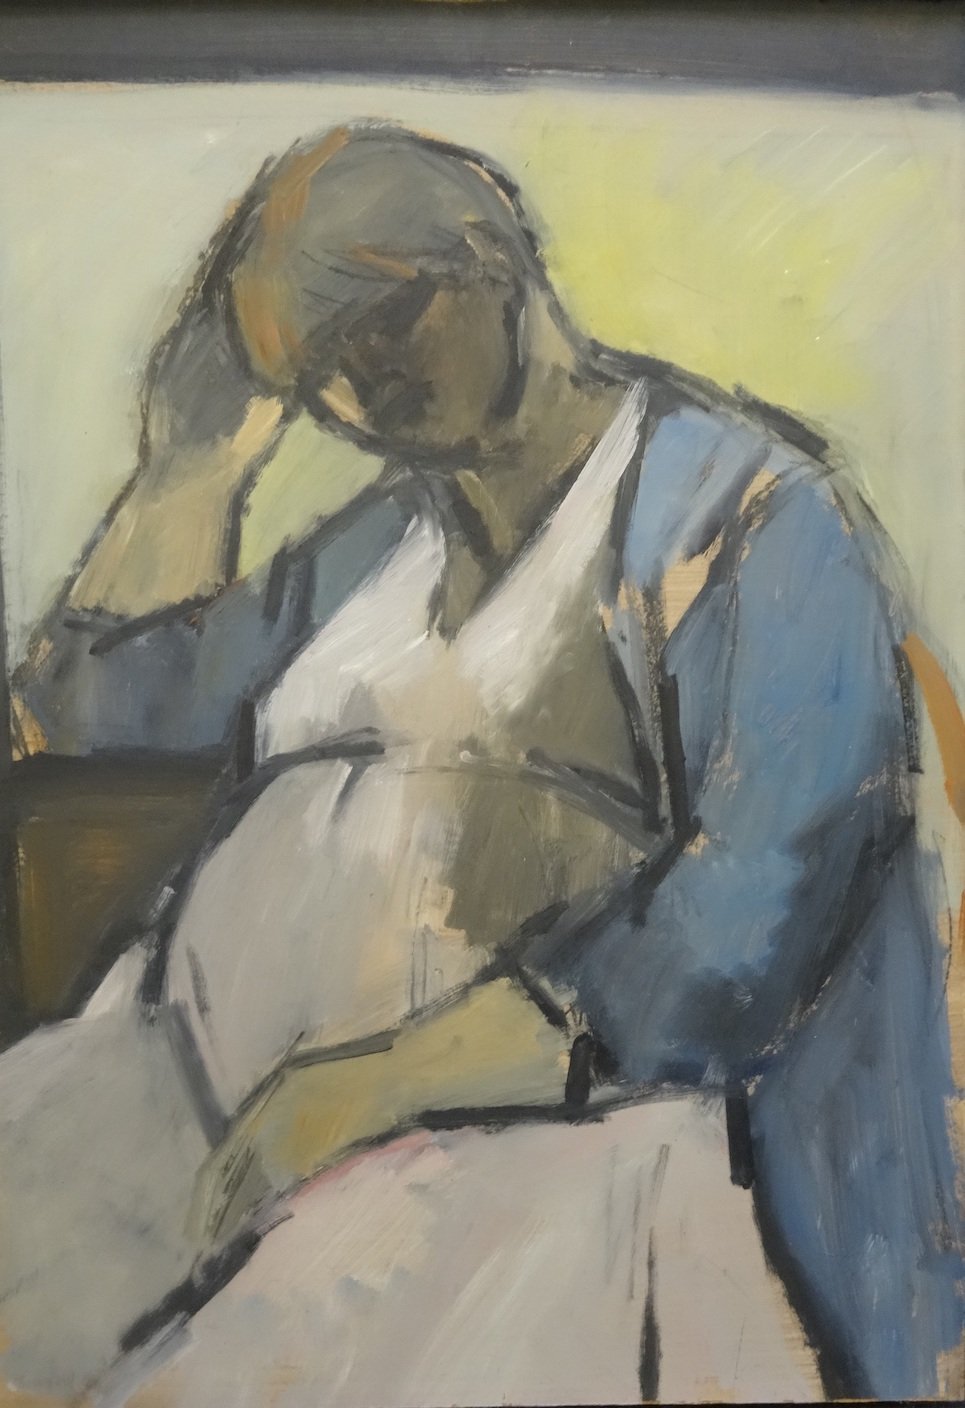 Ghislaine Howard, Self Portrait Pregnant, 1984 © Ghislaine Howard